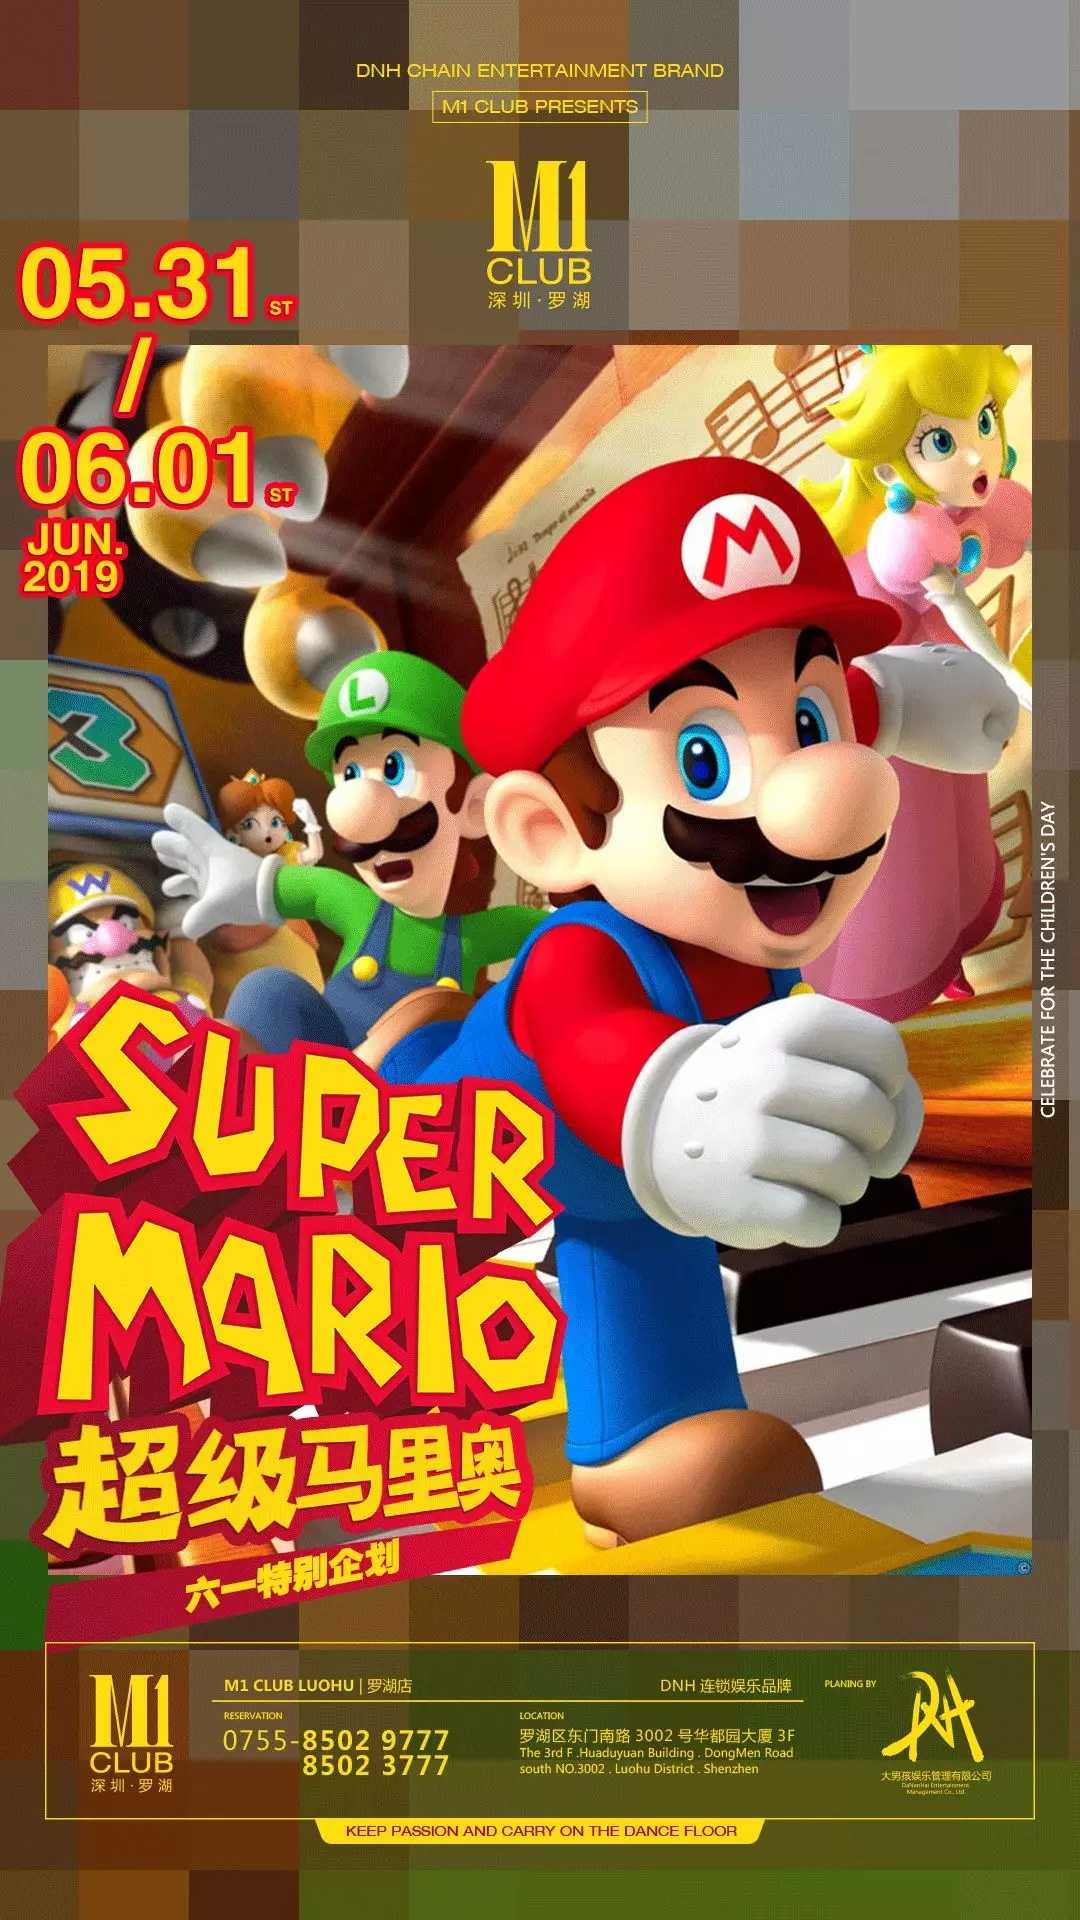 M1酒吧 Super Mario超级马里奥 六一特别企划